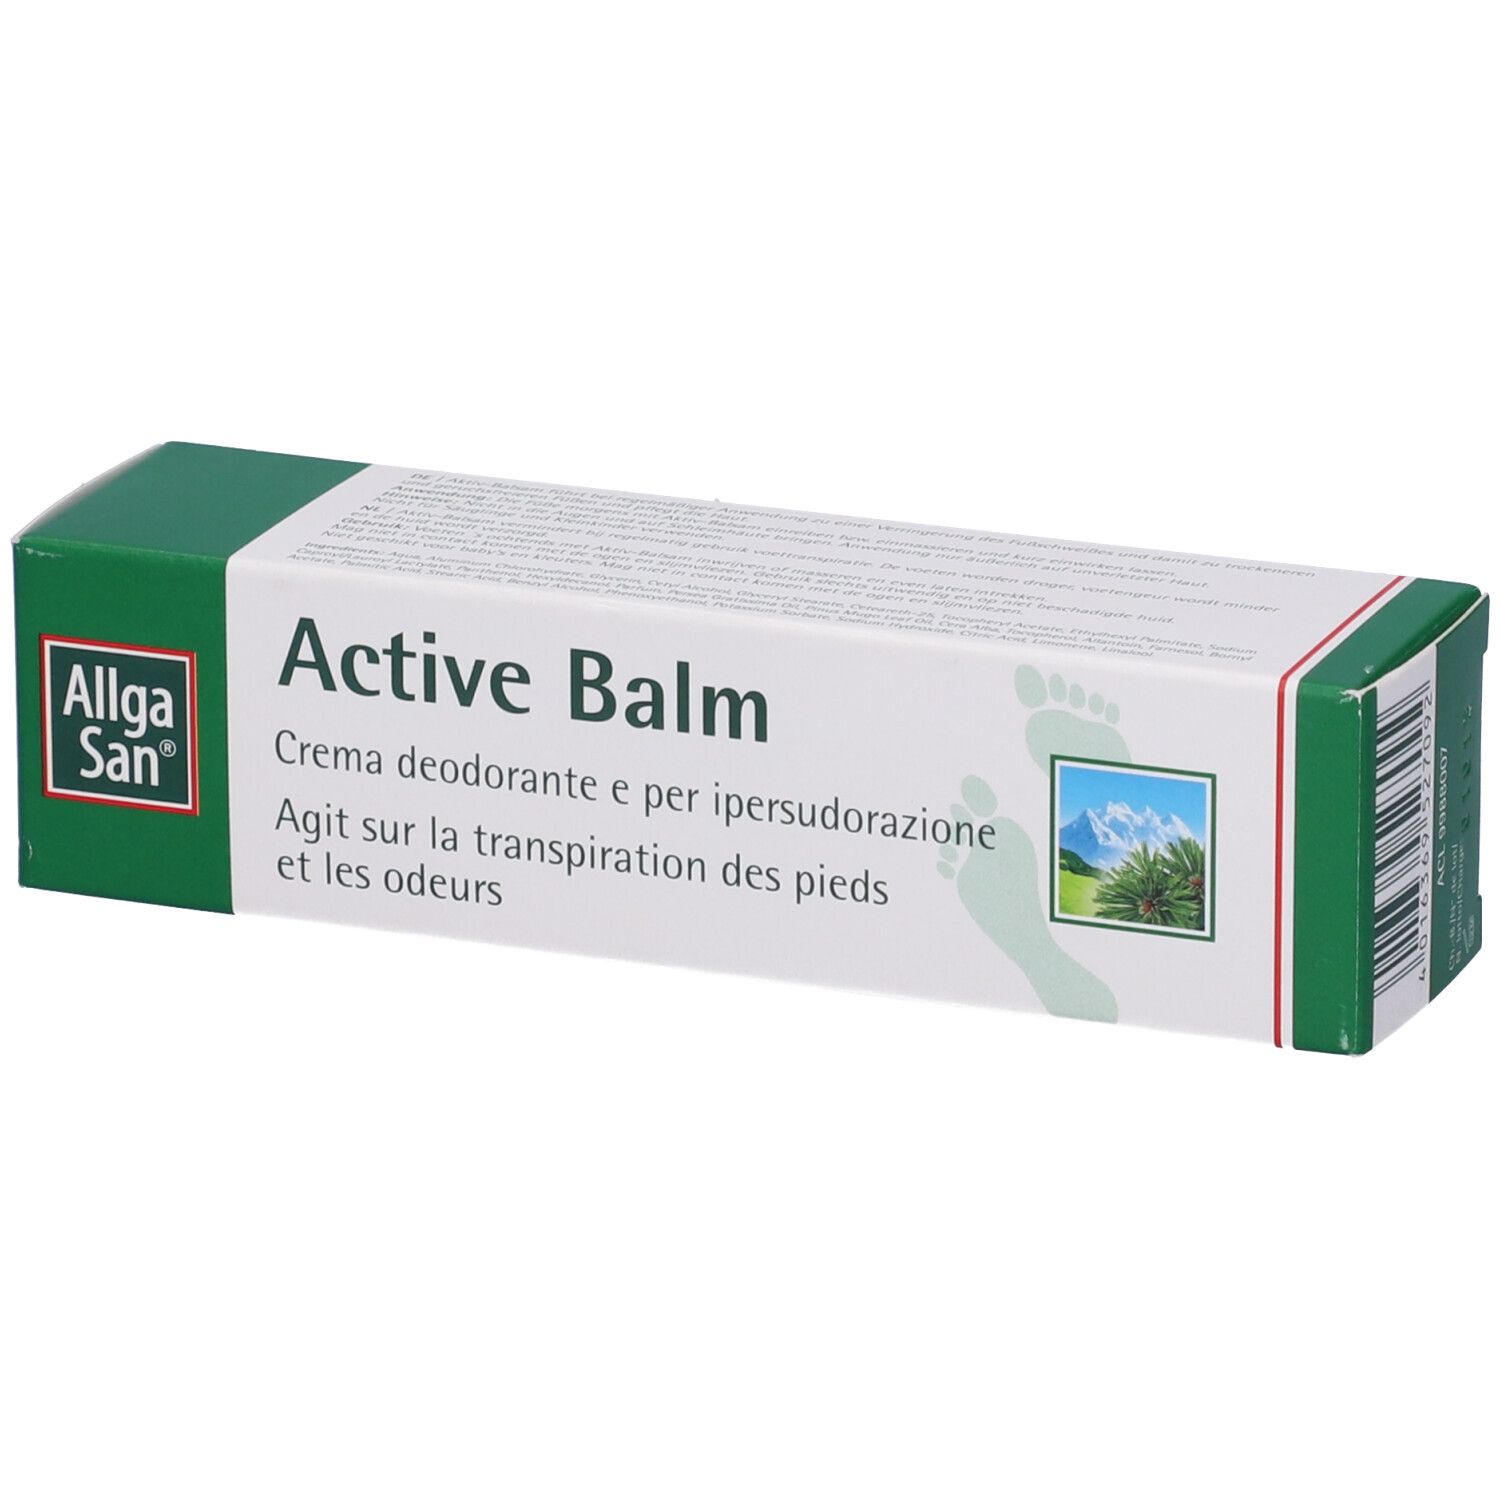 Allga San Active Balm 50 ml Balsamo